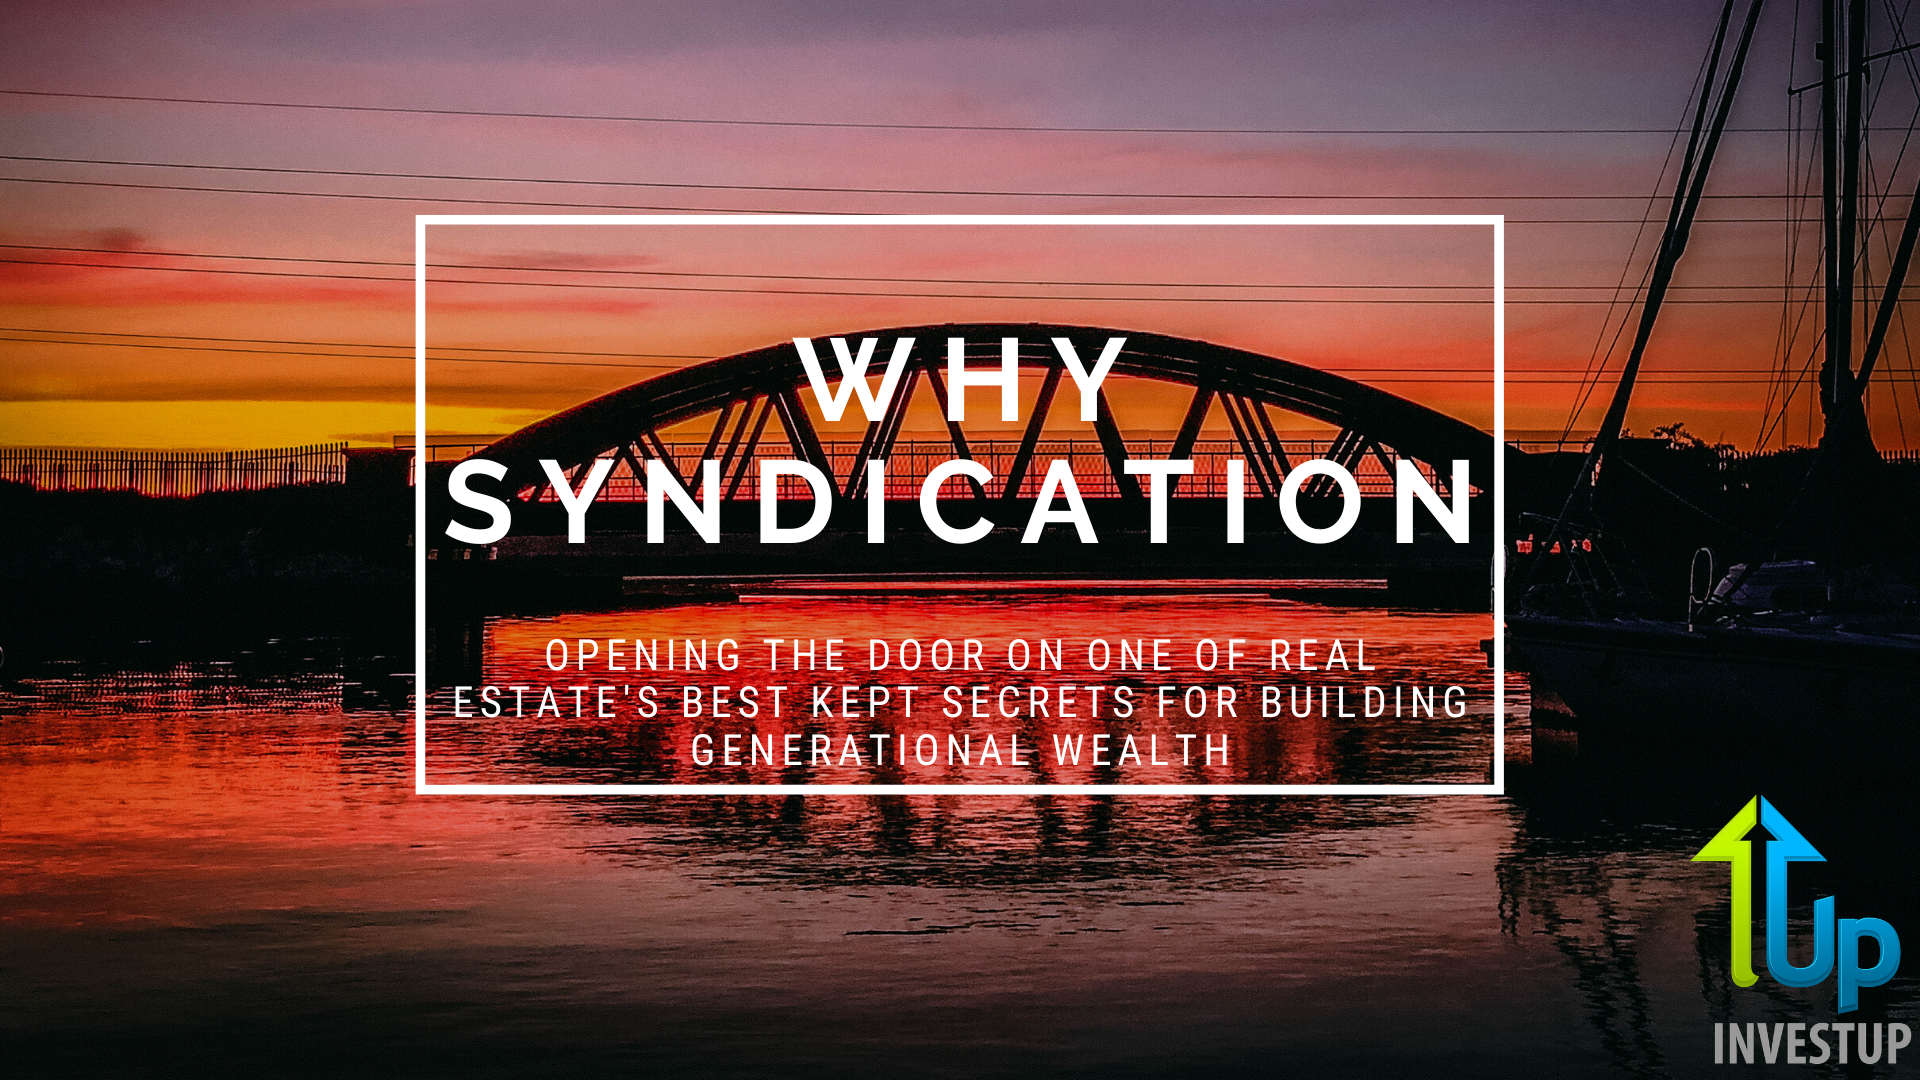 [WEBINAR] Why Syndication? Real Estate's Best Kept Wealth Building Secret